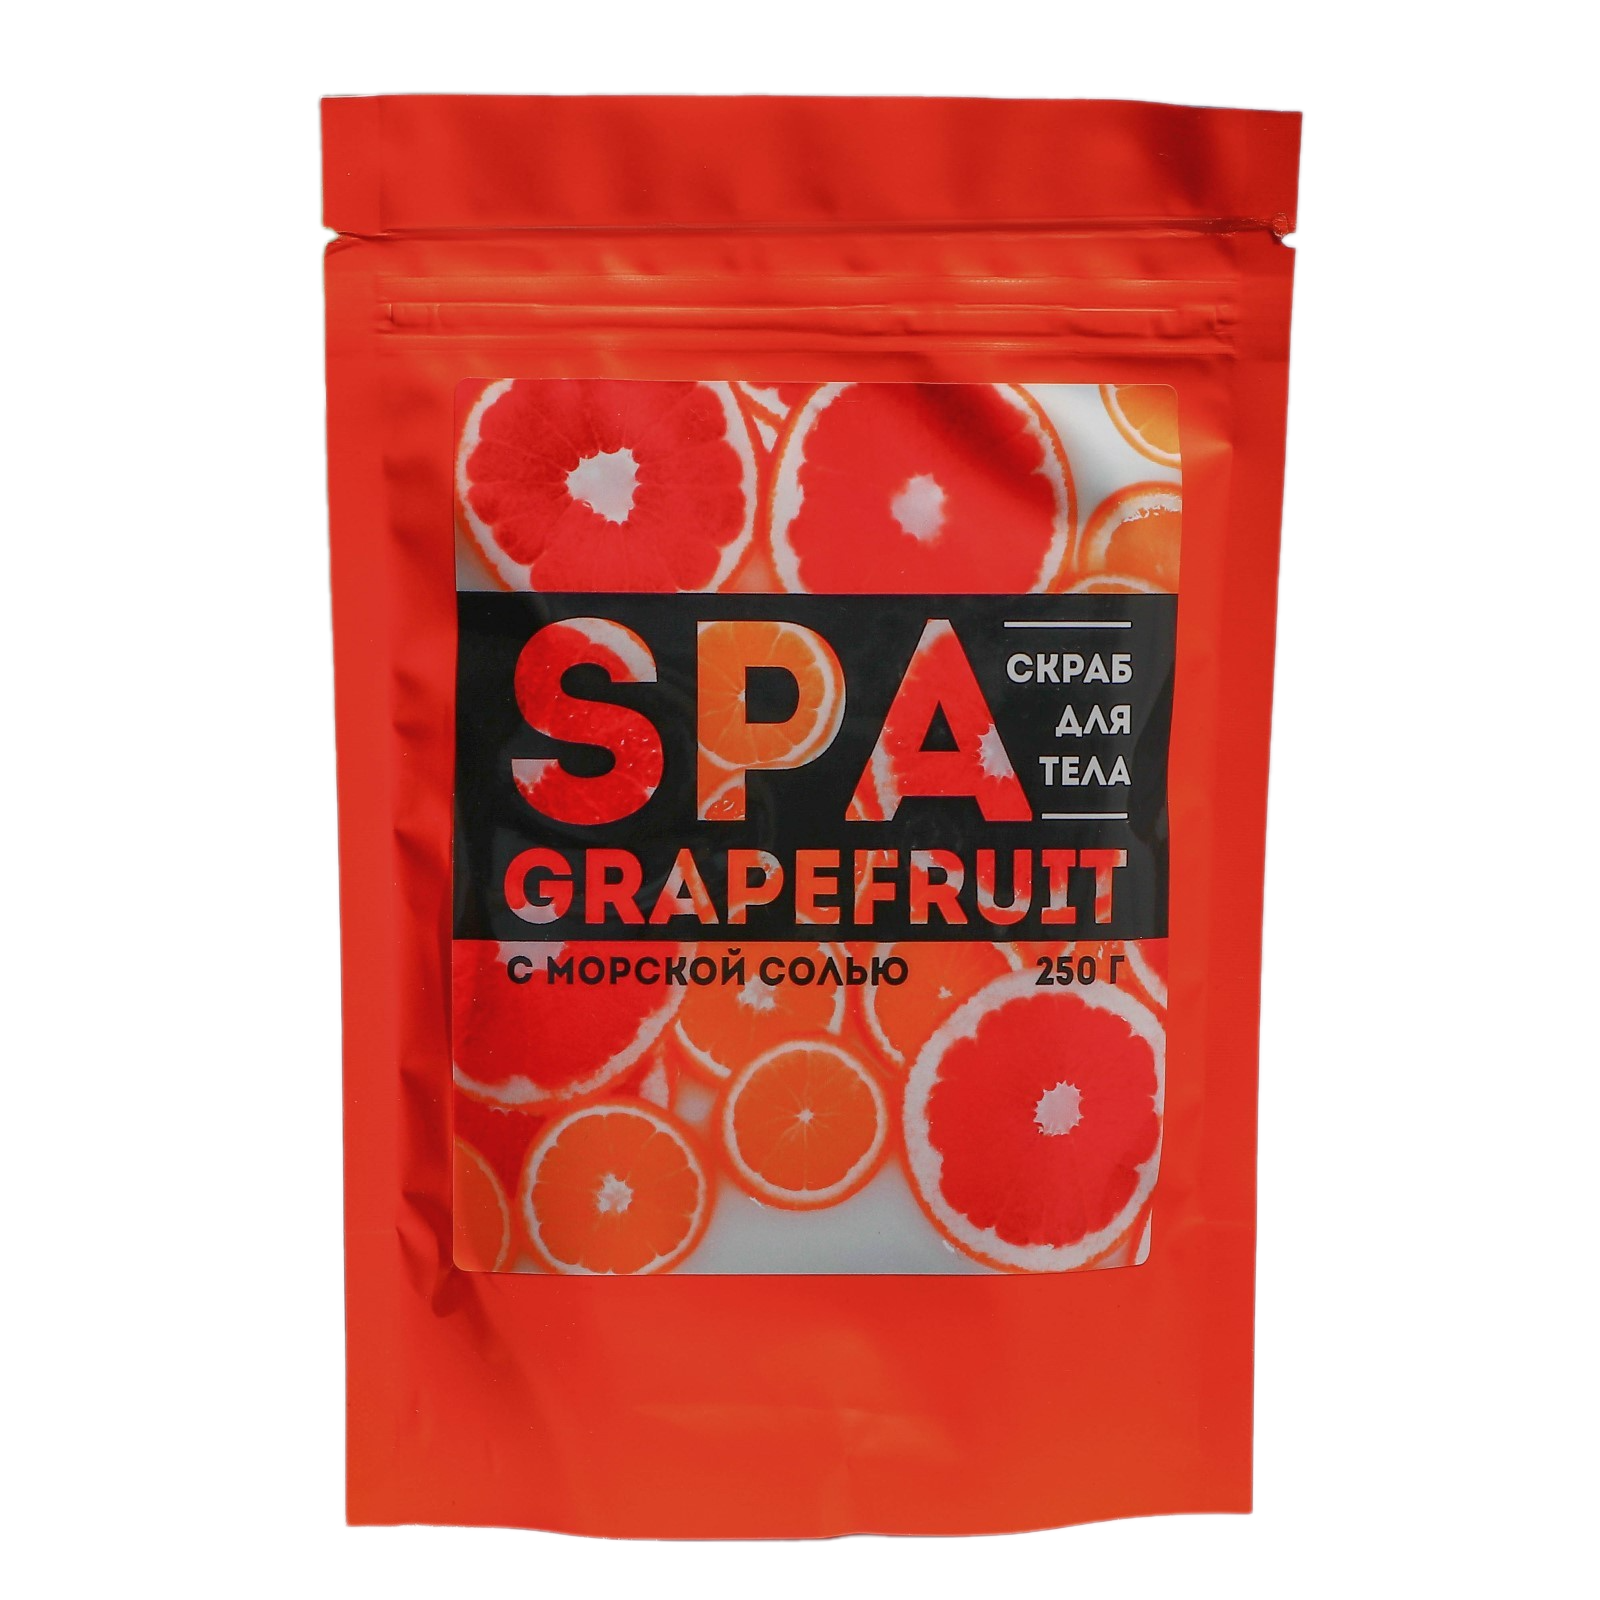 Соляной скраб для тела SPA grapefruit 250 г